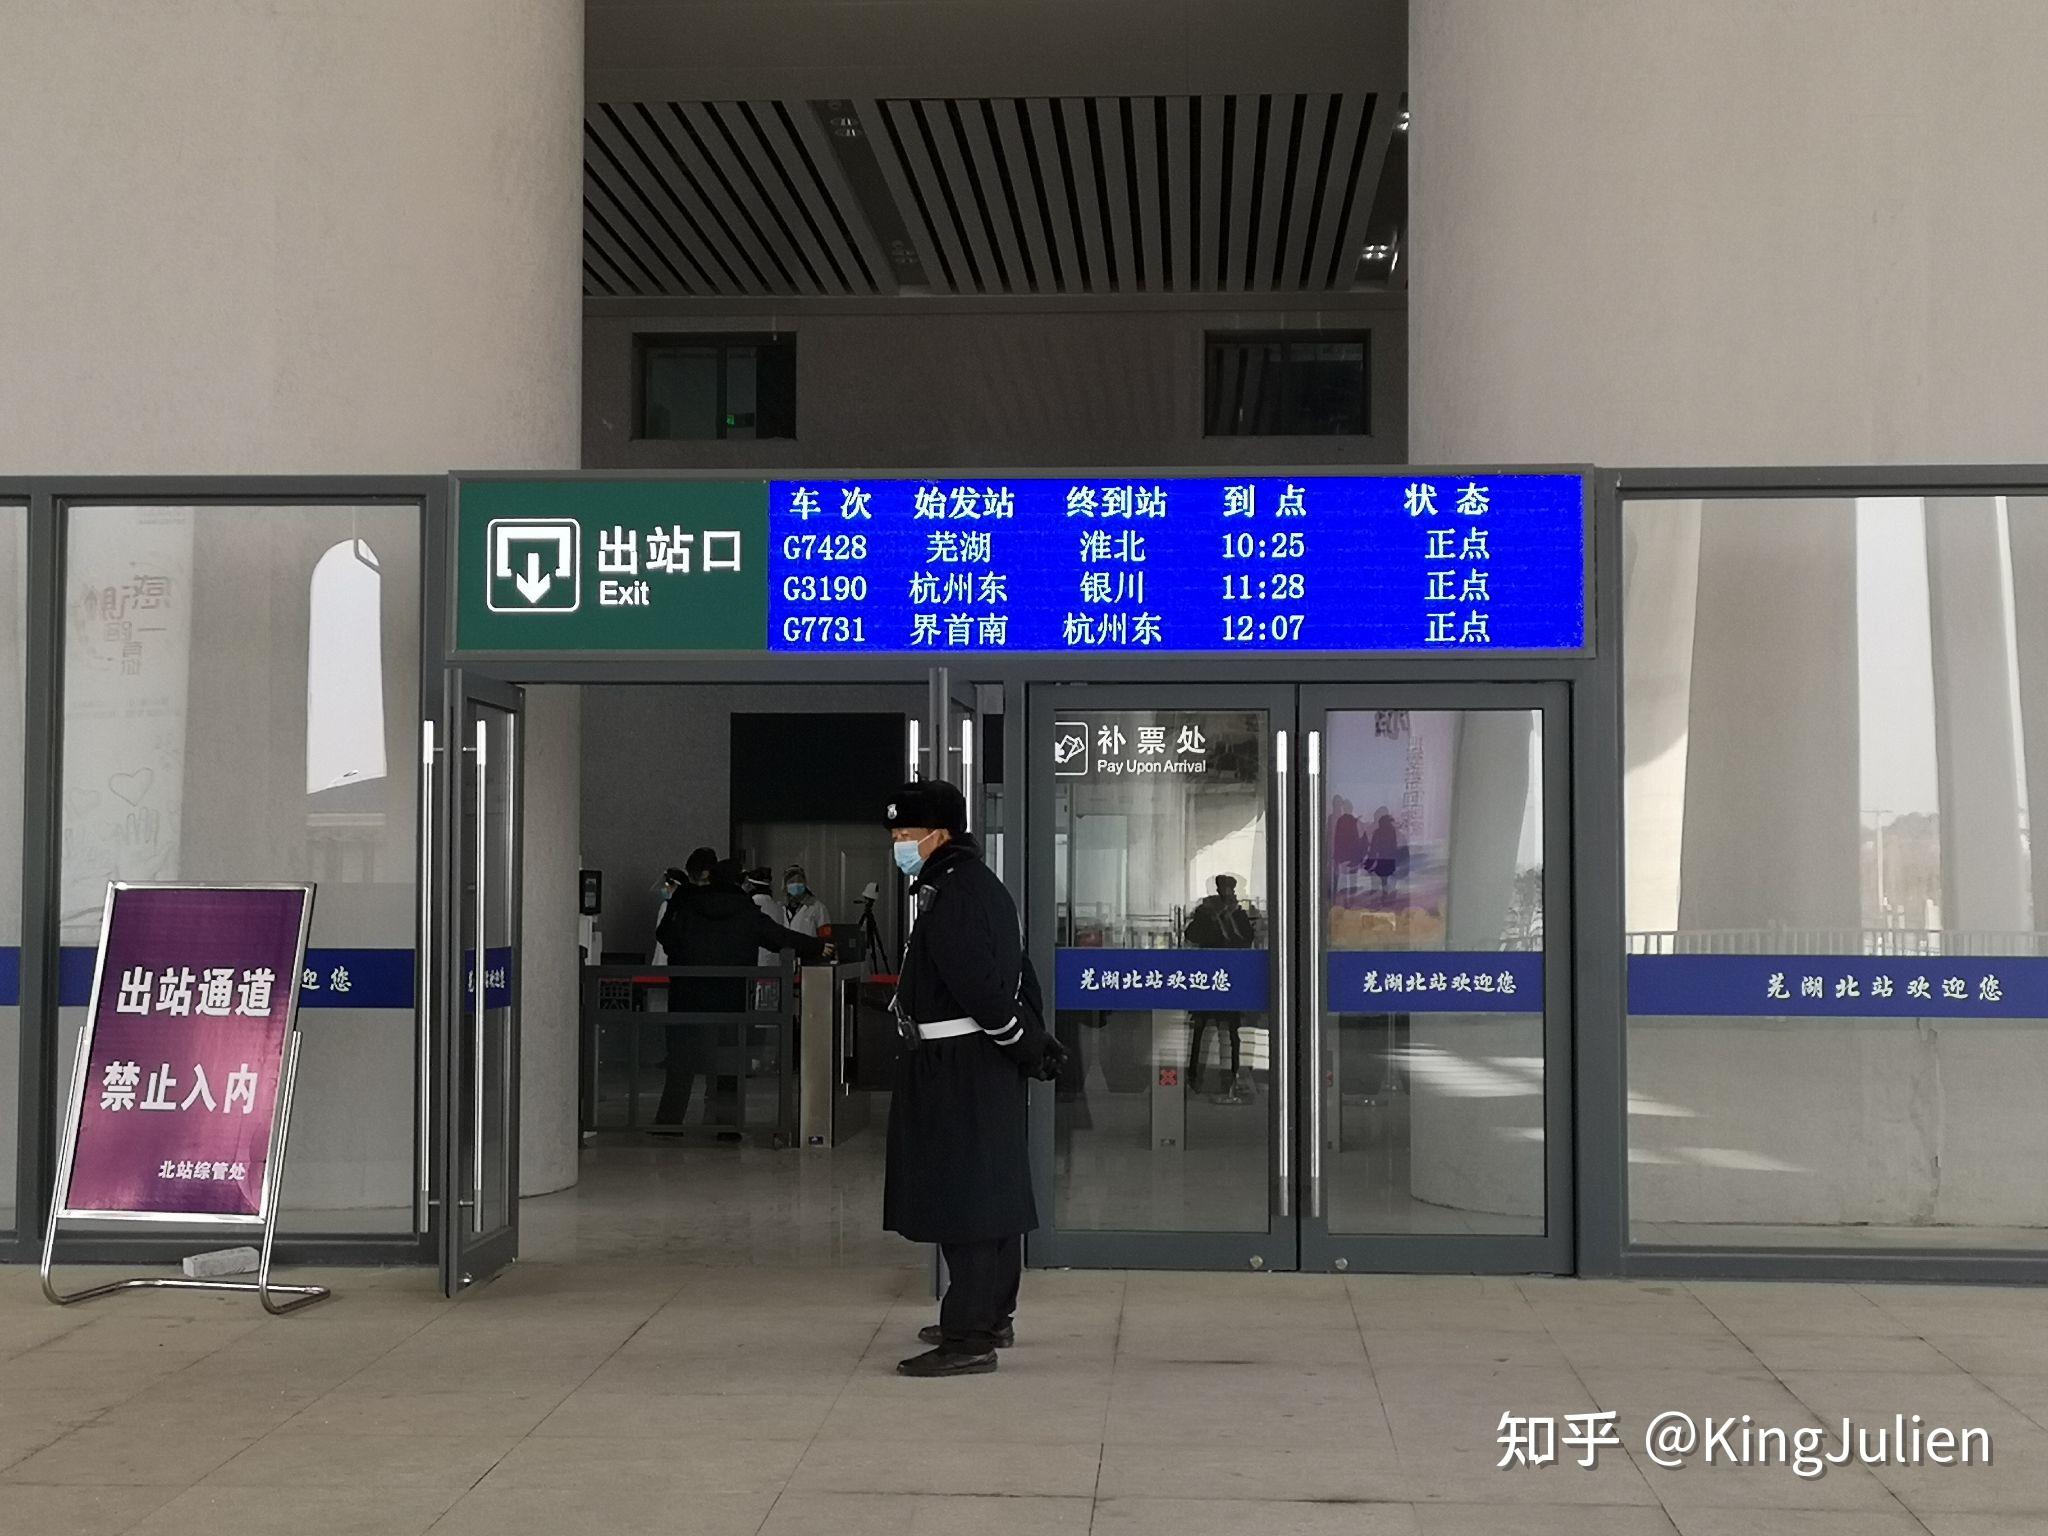 通往出站口的楼梯由于线路途径本站时位于高架区段,故芜湖北站同样